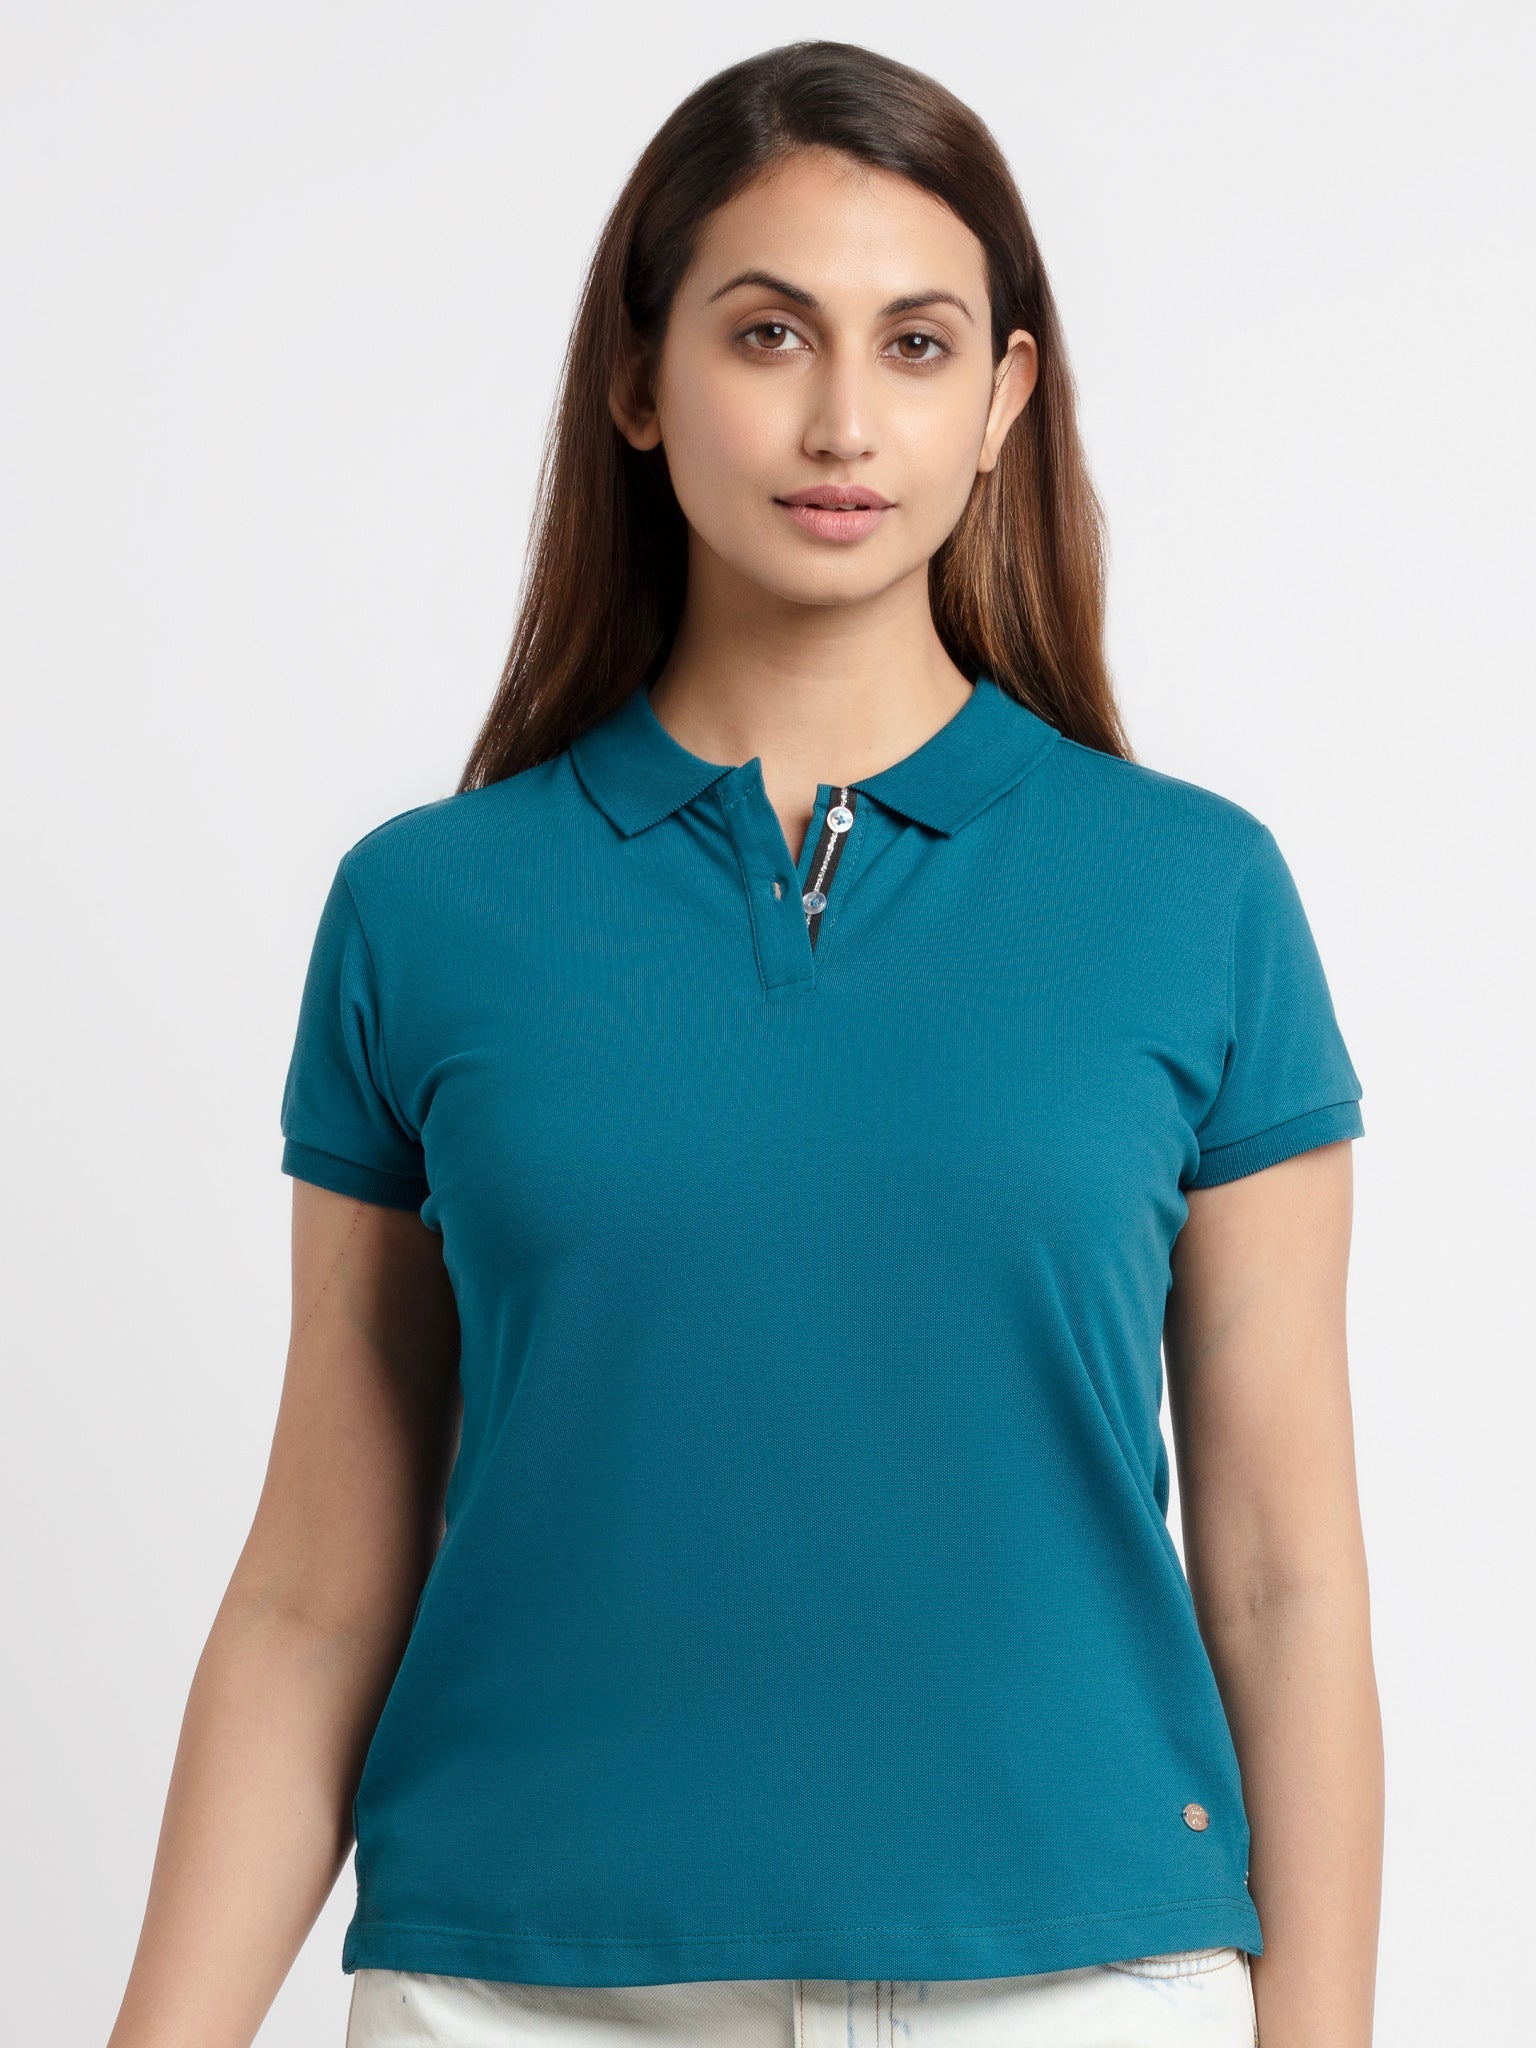 Buy Womens Solid Polo T-Shirt -|Status Quo | S, M,  L,  XL,  XXL, 3XL